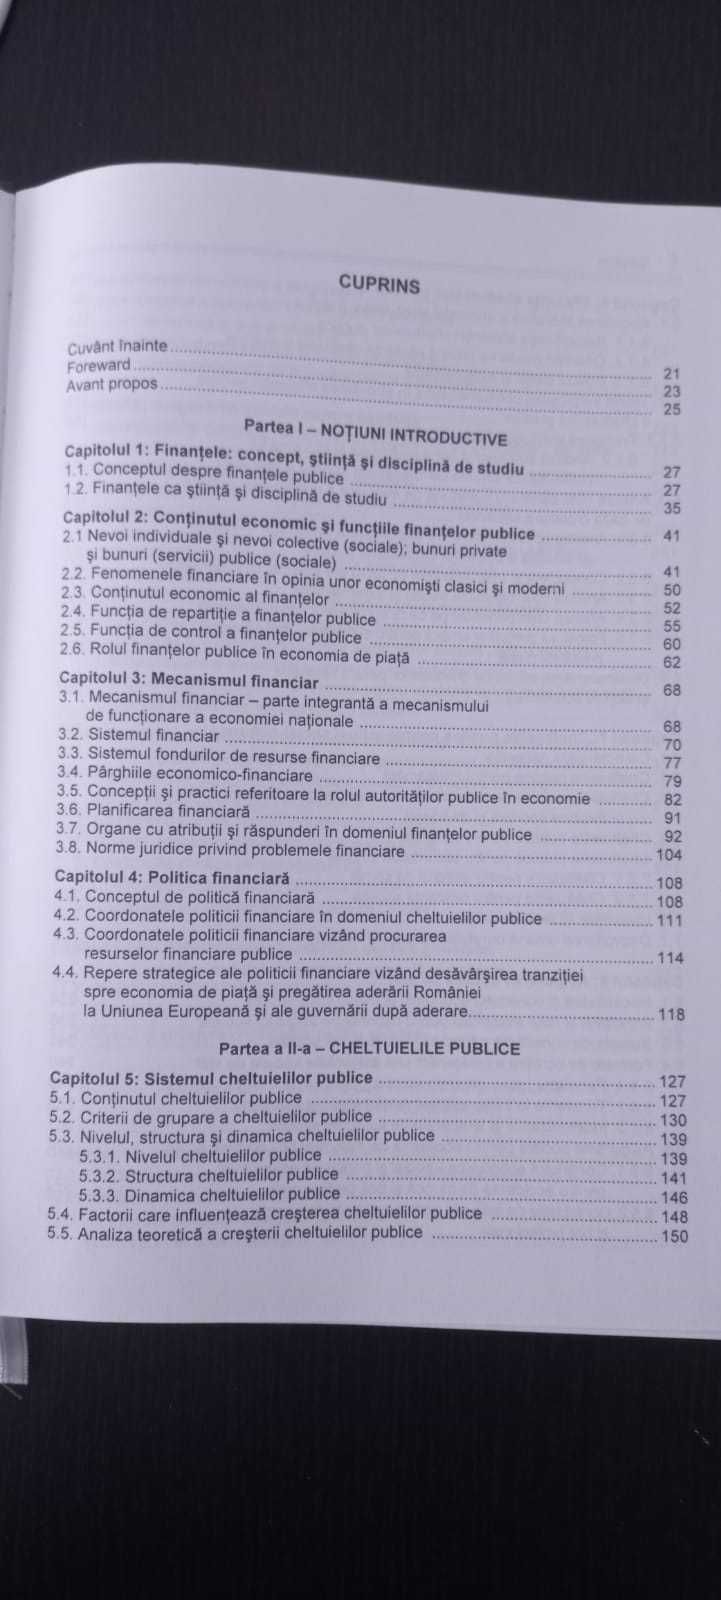 Finanțe publice, Iulian Văcărel, ediția a VI-a